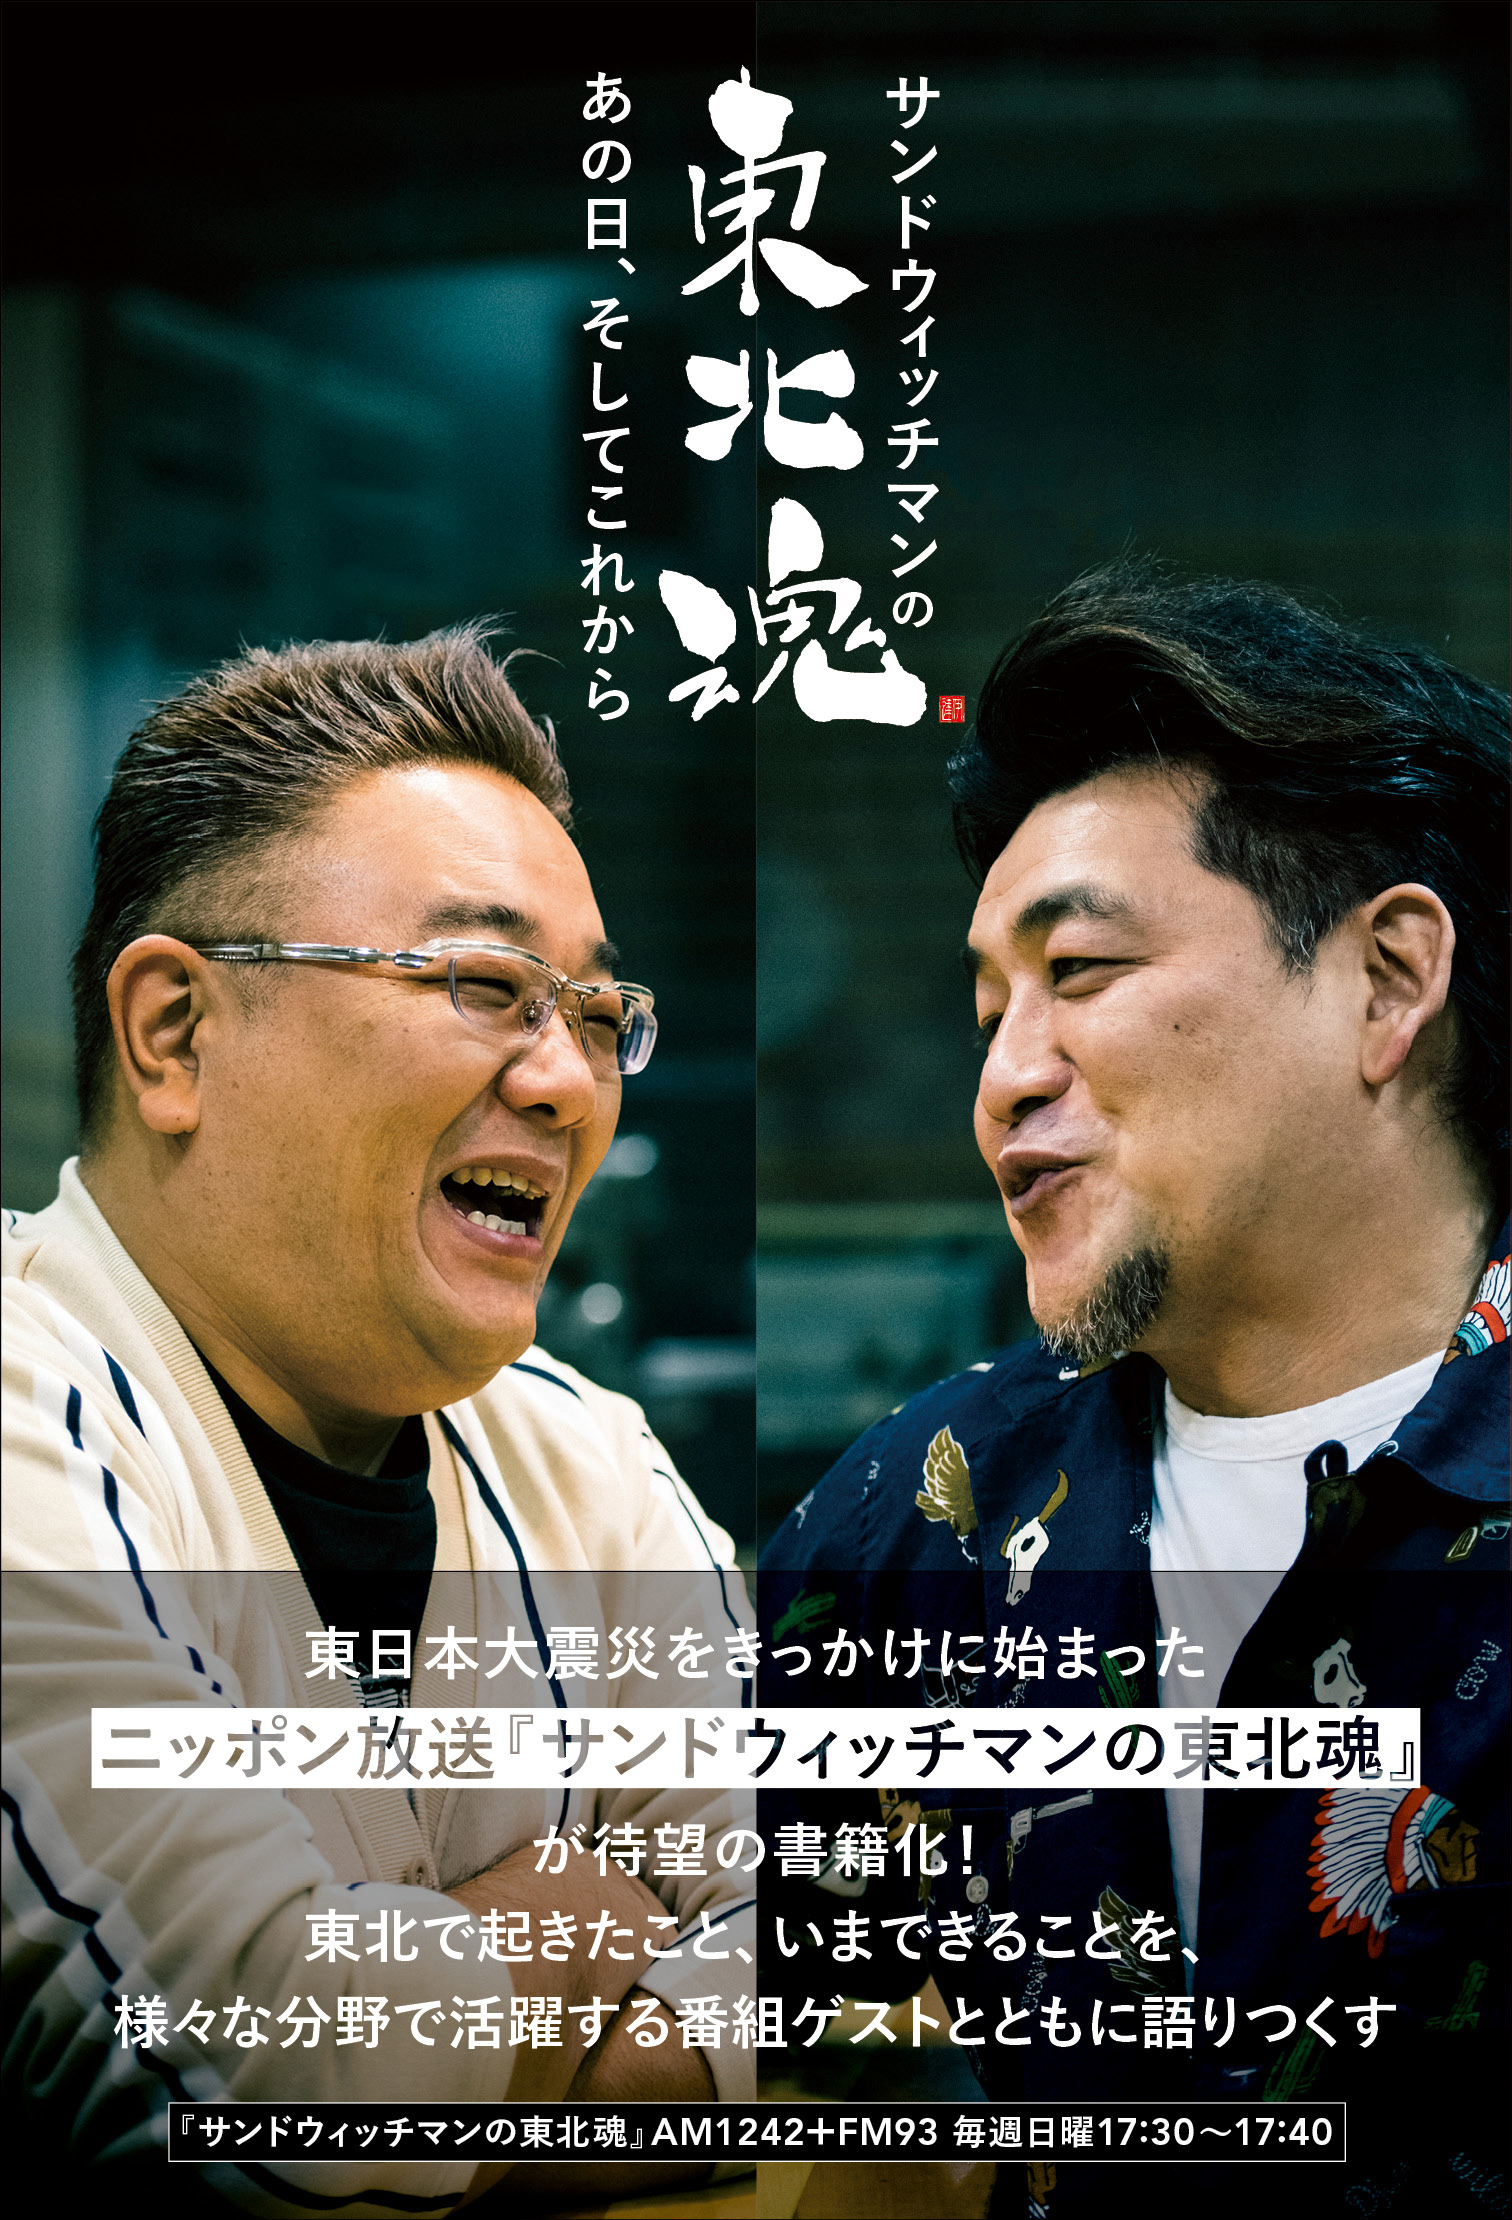 サンドウィッチマンのふたりが東日本大震災をきっかけに始めたラジオ番組「サンドウィッチマンの東北魂」の書籍化が決定！